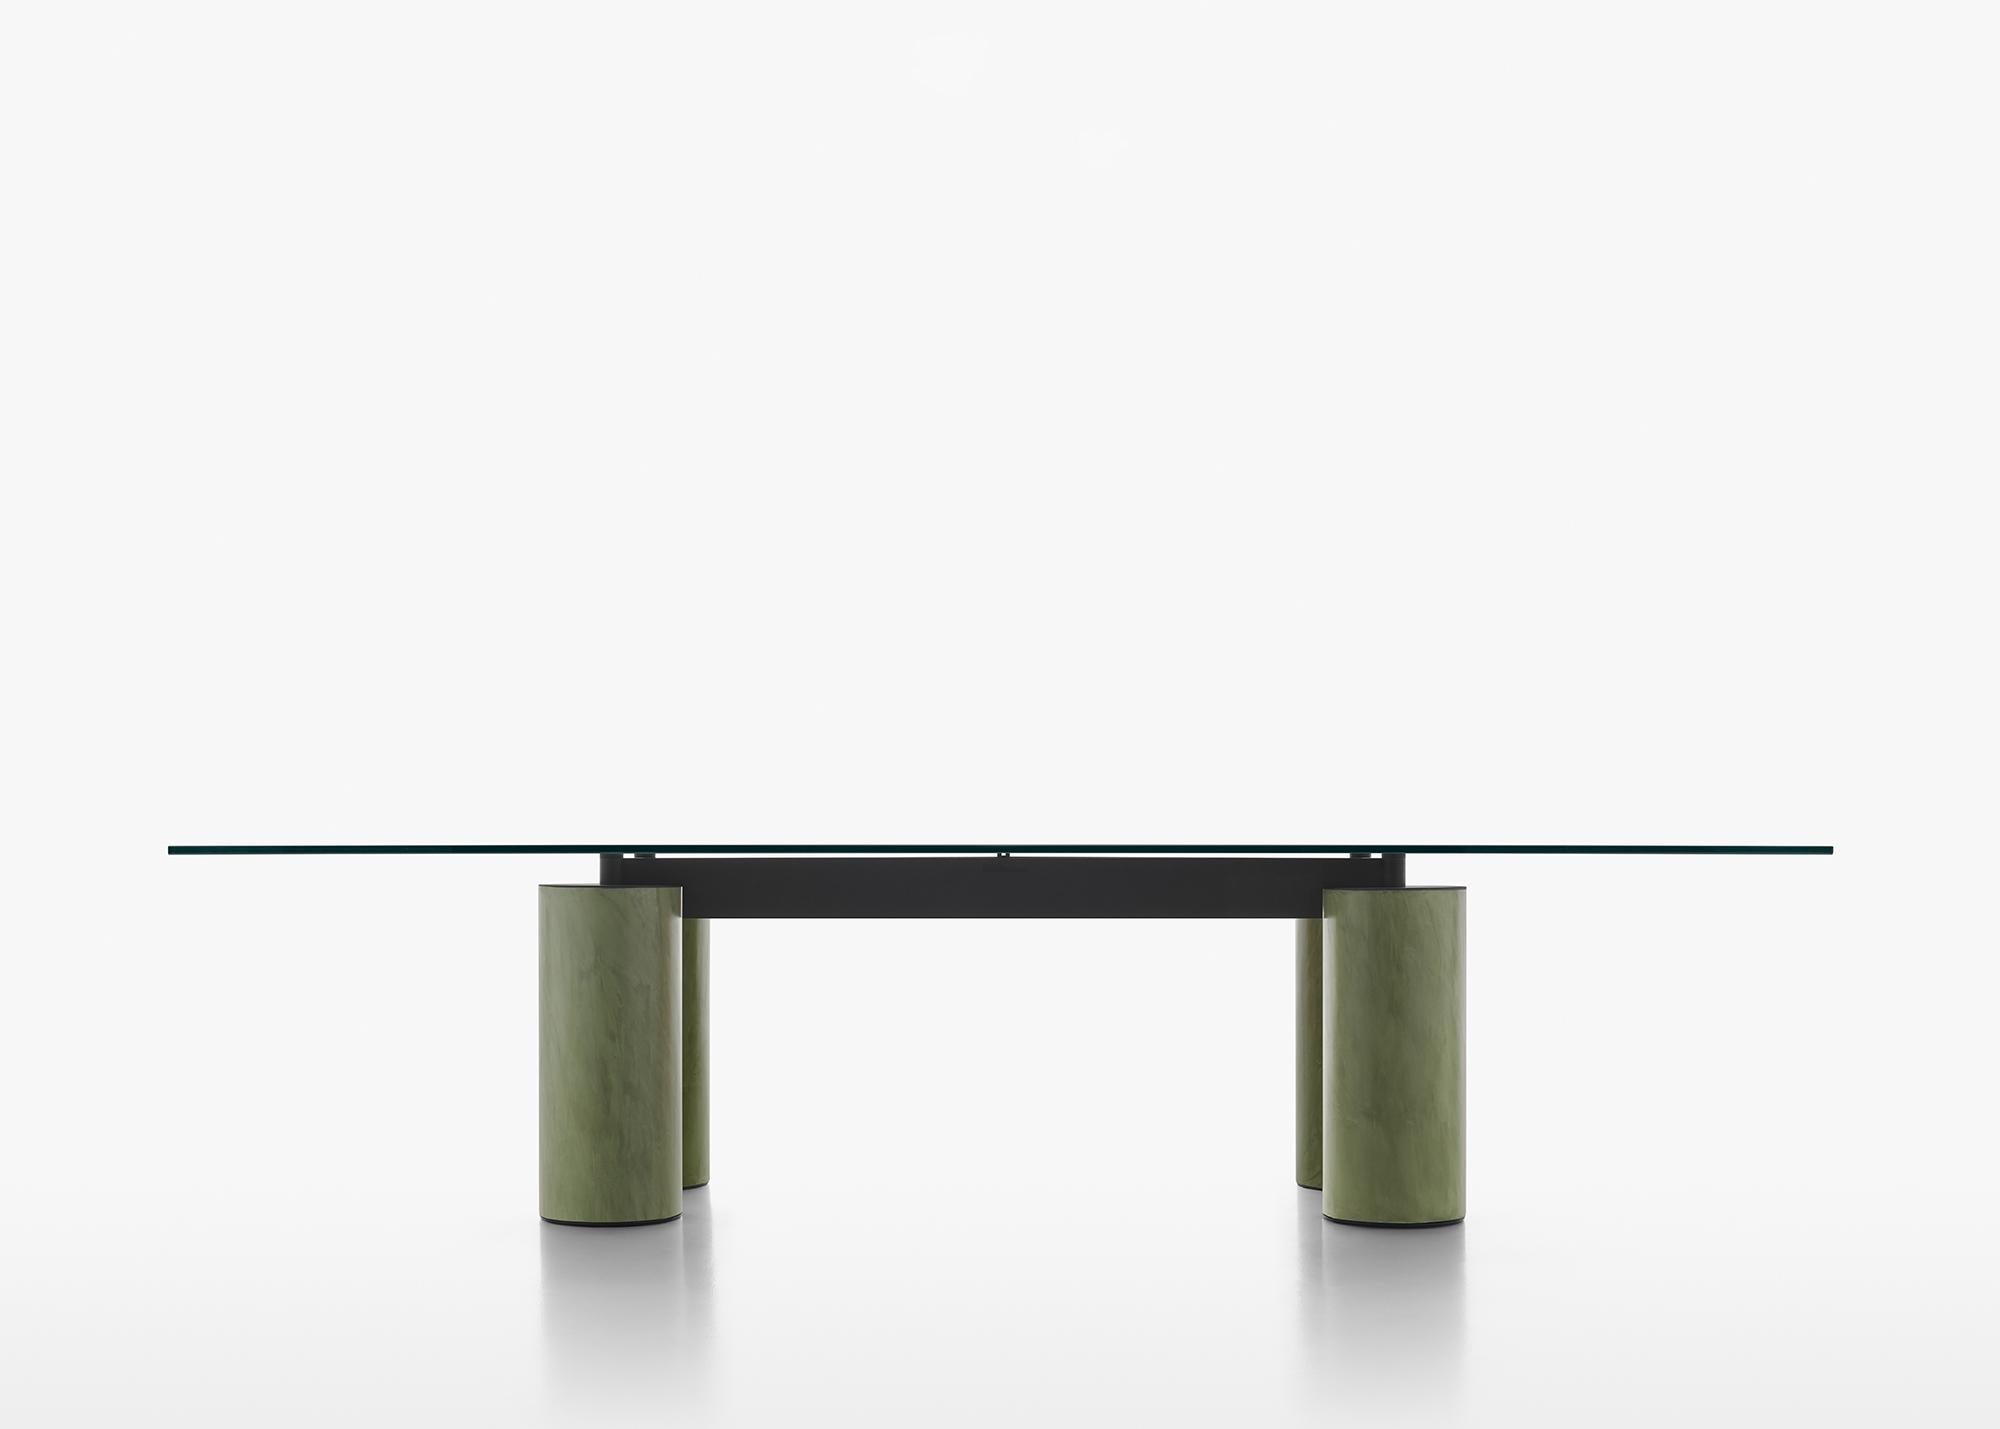 Système de tables avec plateaux en verre soutenus par des colonnes imposantes en finition Fresco, un matériau précieux composé de béton avec des résines spéciales et des pigments. Diamètre dans différents matériaux fins : Fresco finish (pâte de